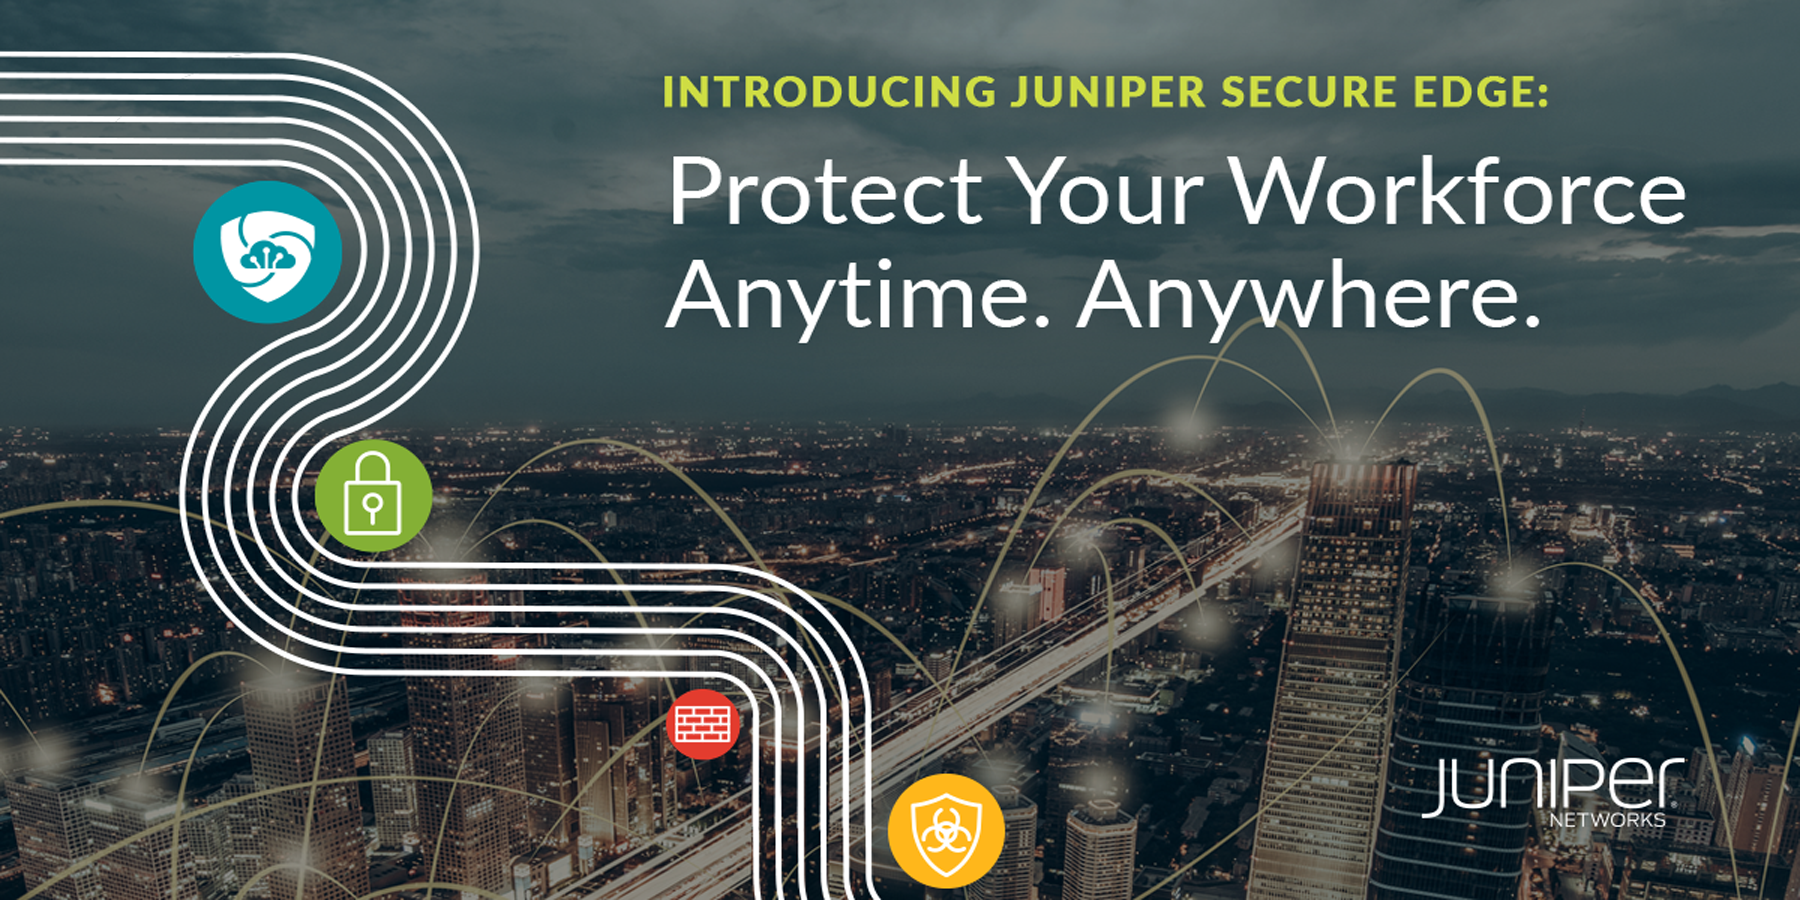 A Juniper tira a borda da migração SASE com novos serviços de firewall fornecidos na nuvem, projetados para proteção da força de trabalho a qualquer hora e em qualquer lugar